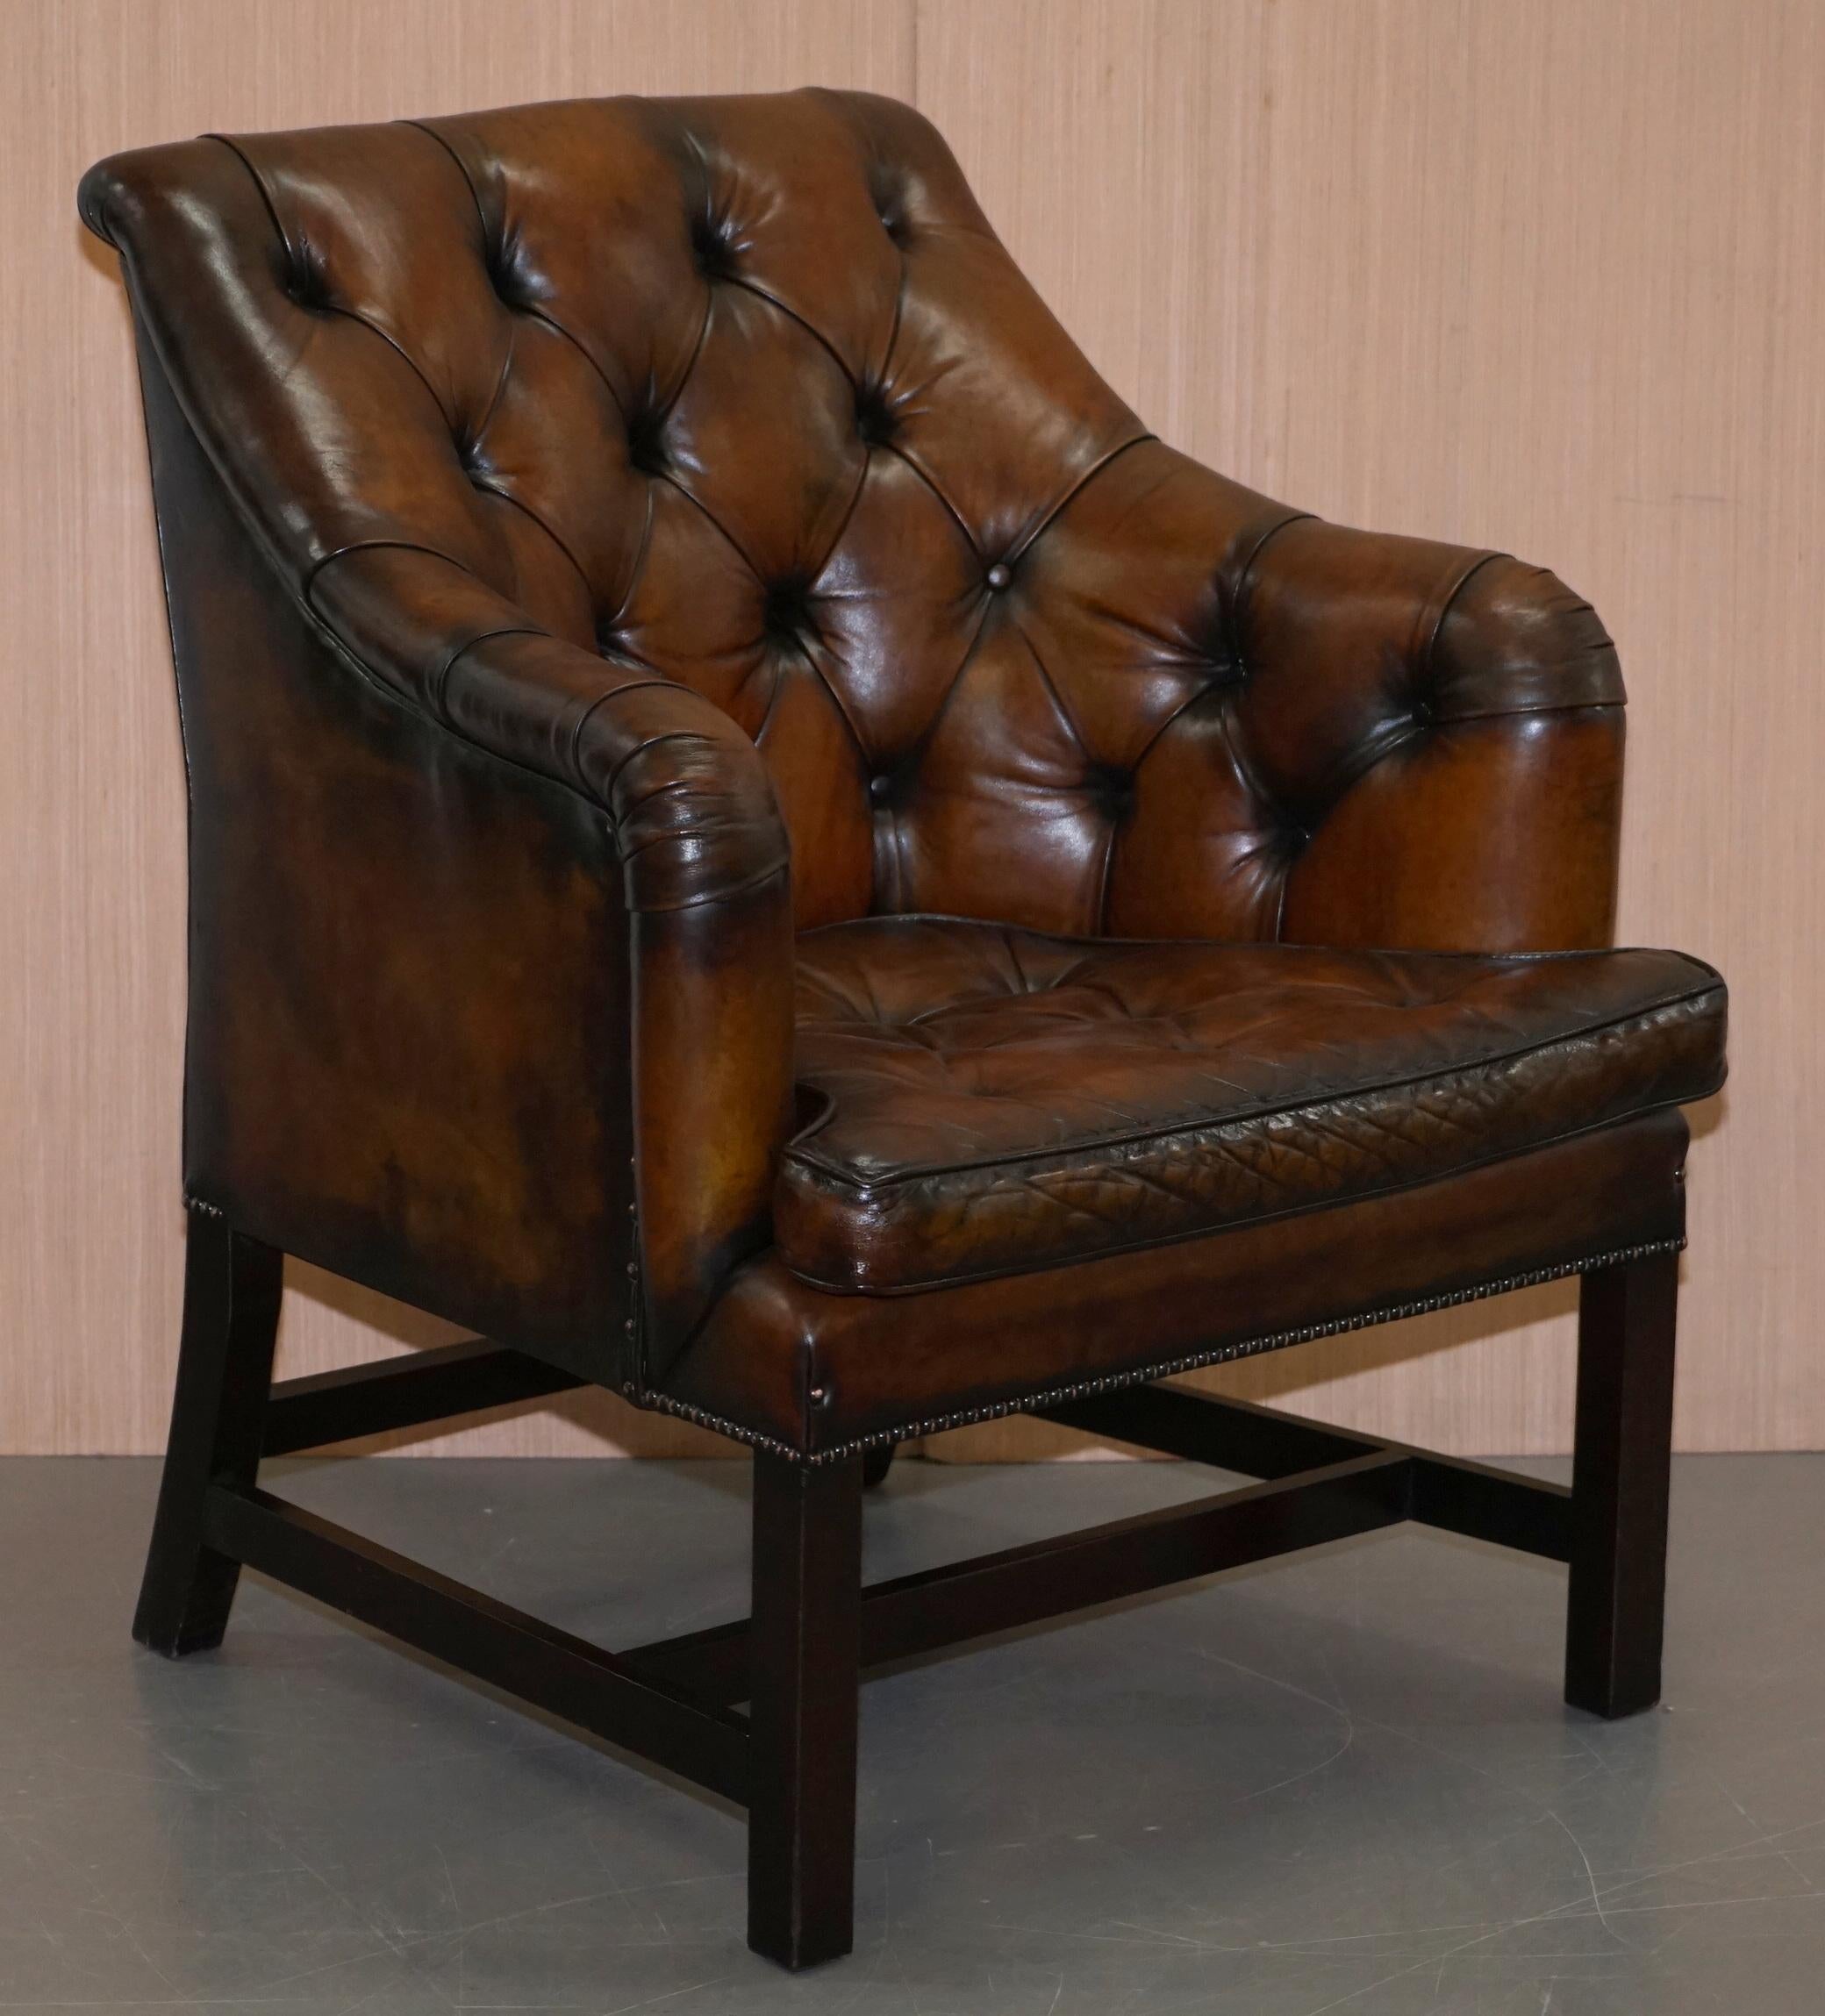 Nous sommes ravis de proposer à la vente cette superbe paire de fauteuils George Smith Whiskey brown de style géorgien, entièrement restaurés. Prix de vente conseillé : 10 400 £ pour la paire.

Véritable chef-d'œuvre de fauteuil, cette chaise est